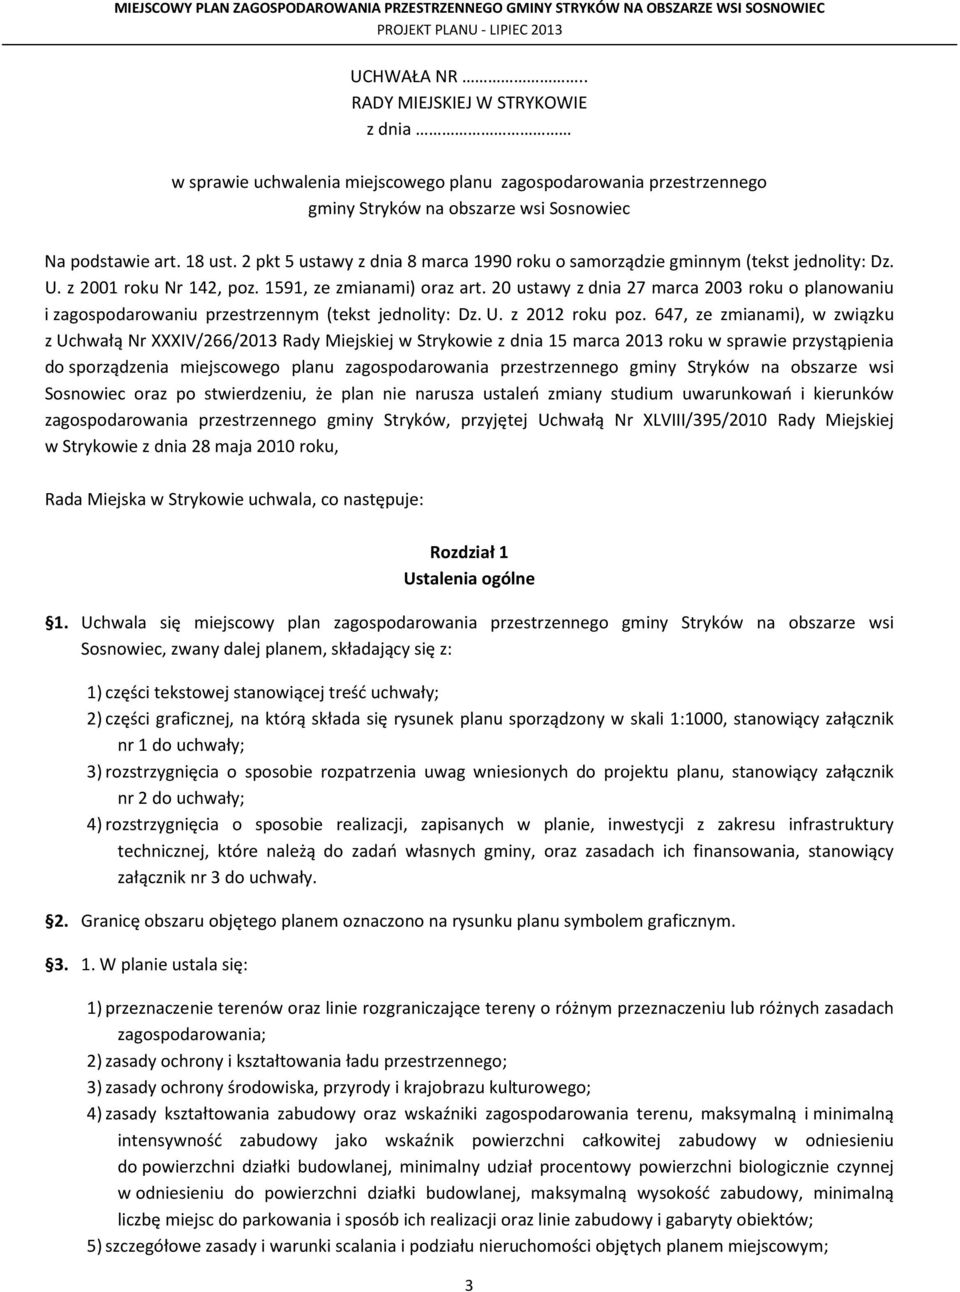 20 ustawy z dnia 27 marca 2003 roku o planowaniu i zagospodarowaniu przestrzennym (tekst jednolity: Dz. U. z 2012 roku poz.